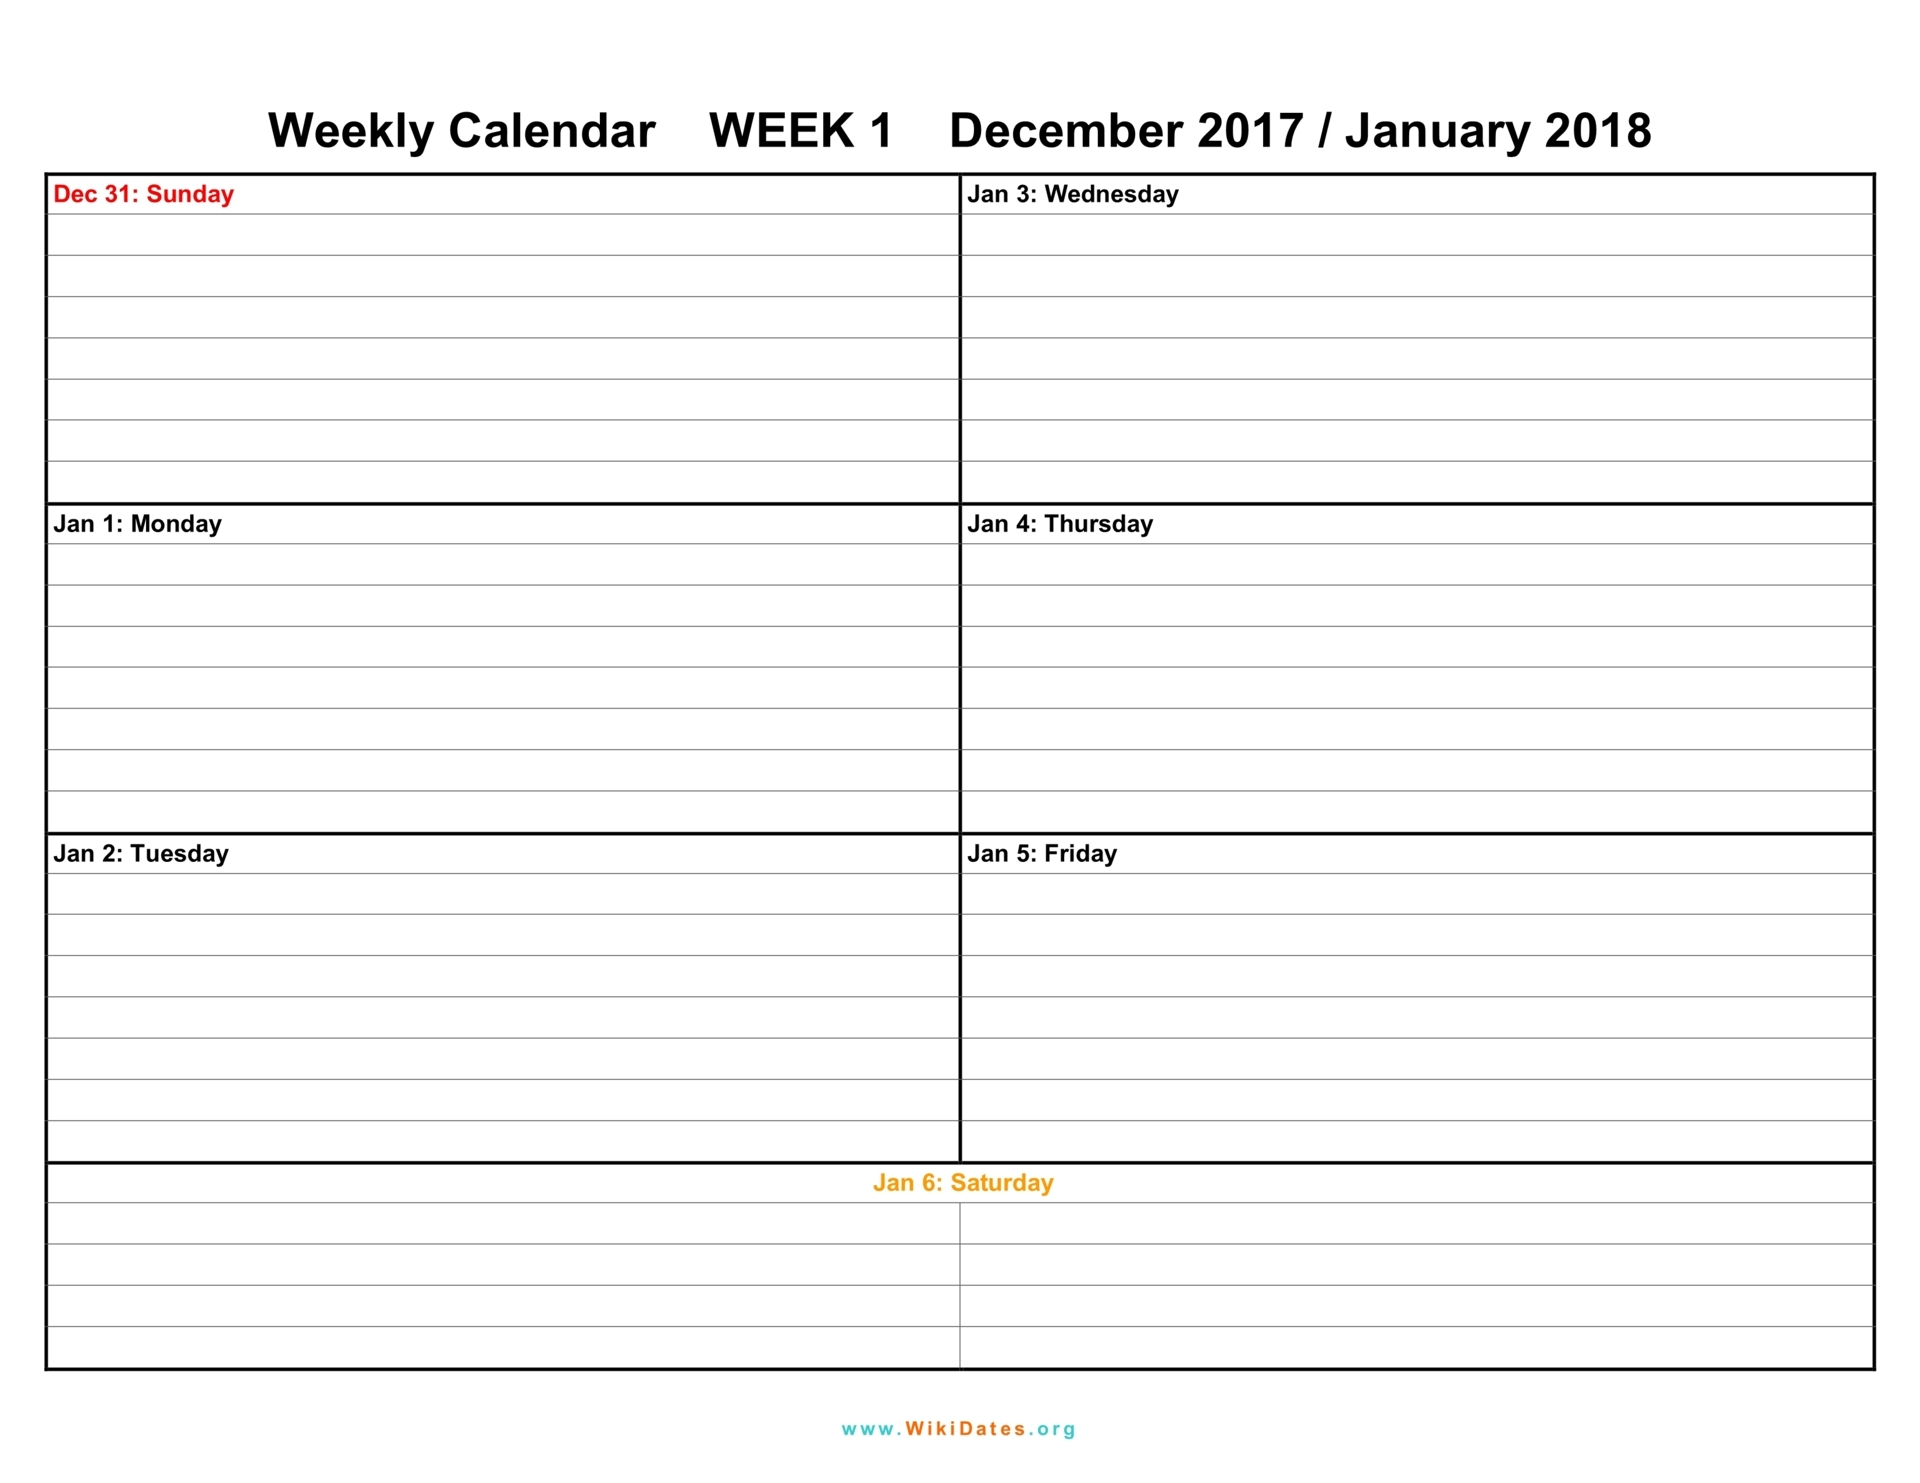 Weekly Calendar Download Weekly Calendar 2017 And 2018 2